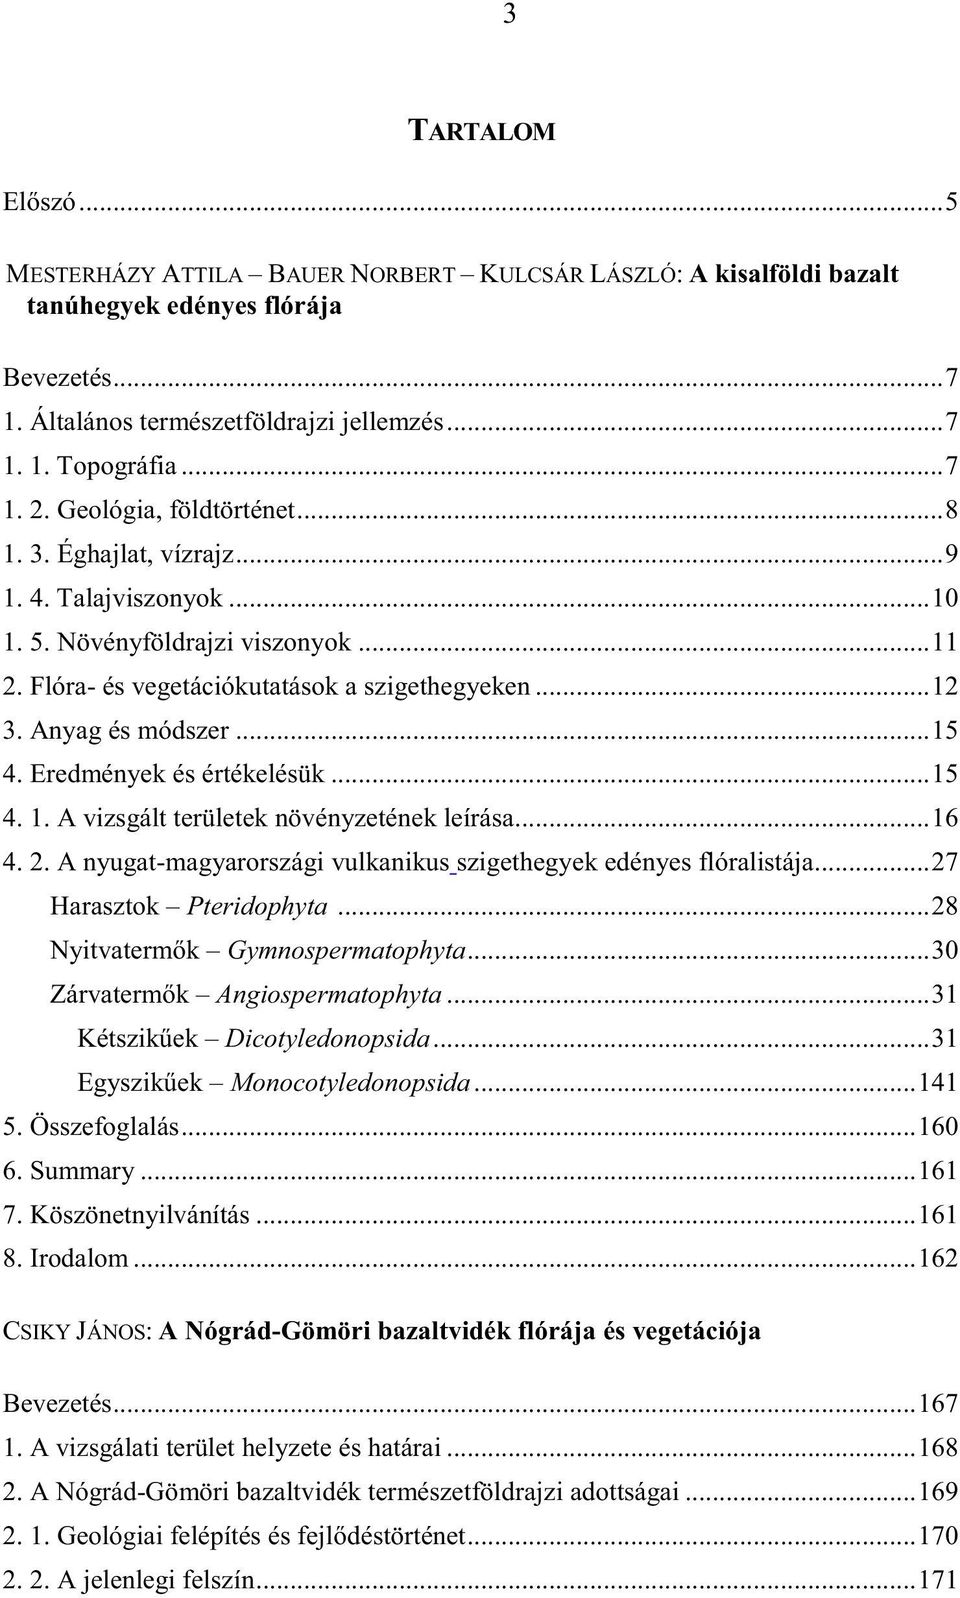 Eredmények és értékelésük...15 4. 1. A vizsgált területek növényzetének leírása...16 4. 2. A nyugat-magyarországi vulkanikus szigethegyek edényes flóralistája...27 Harasztok Pteridophyta.